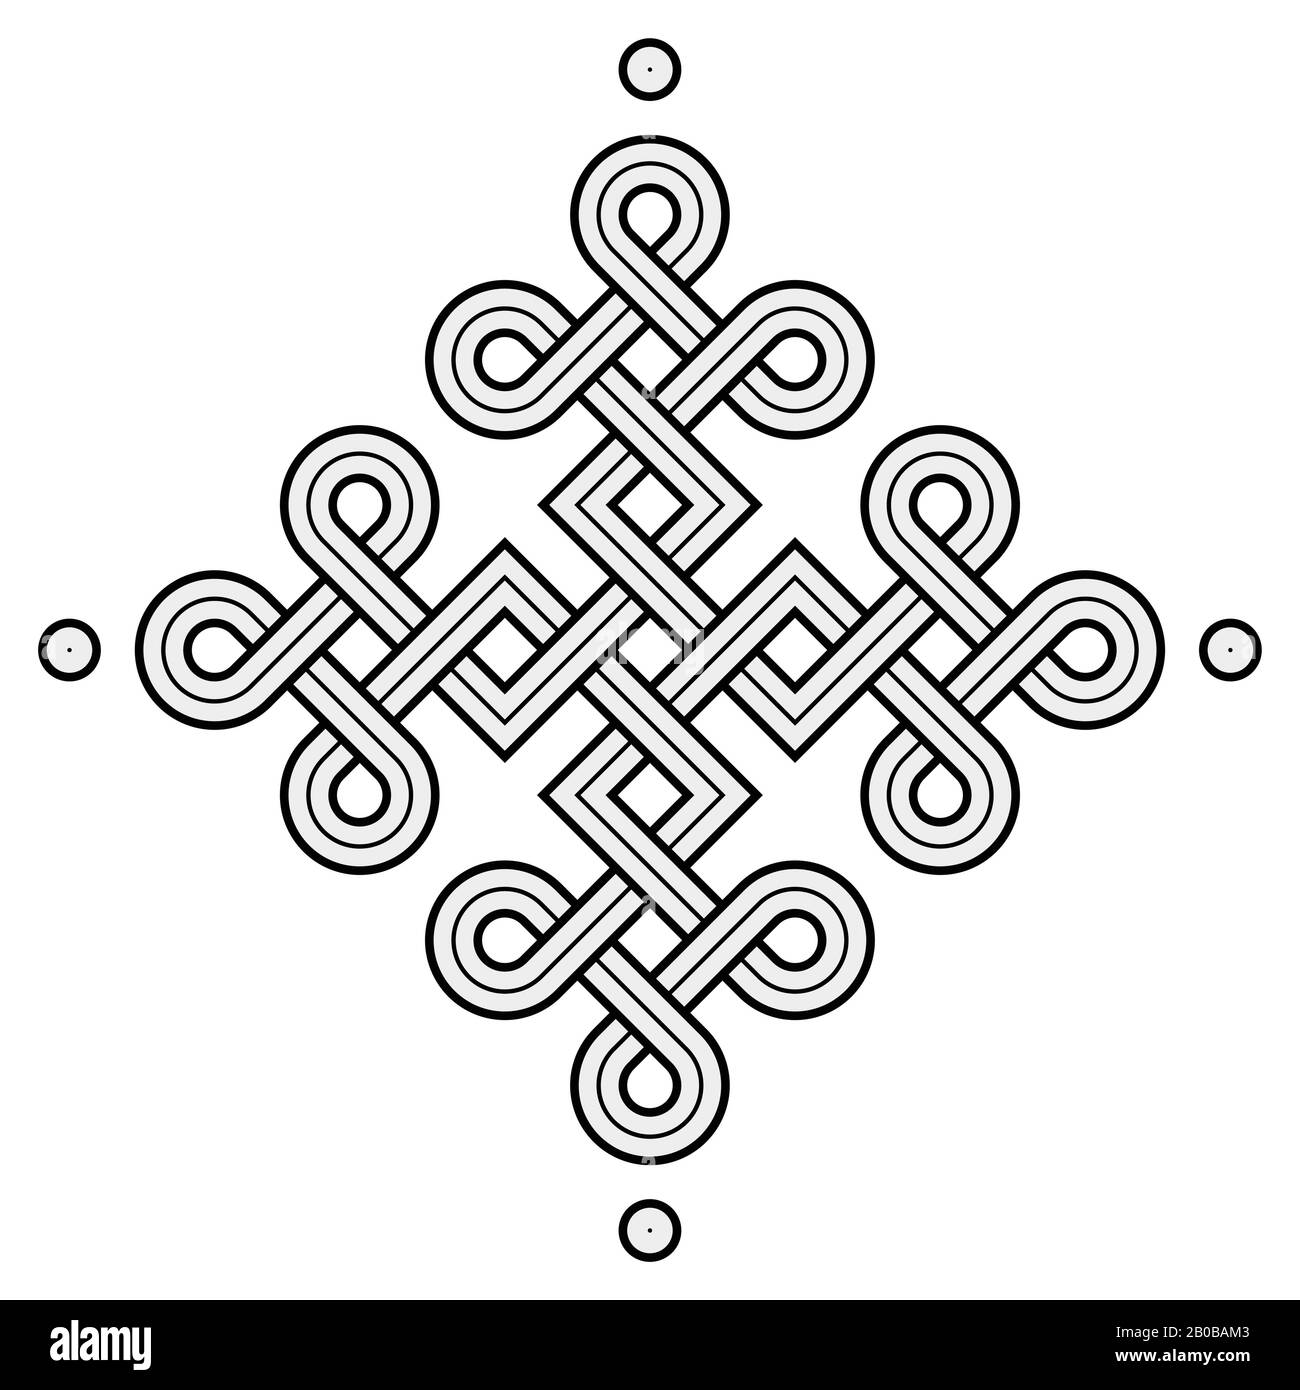 Illustrazione vettoriale di un nodo Vichingo nordico - mistico, simbolo decorativo con linee Incise oro intrecciate. Linee, incisione e riempimento colore ordinatamente Illustrazione Vettoriale